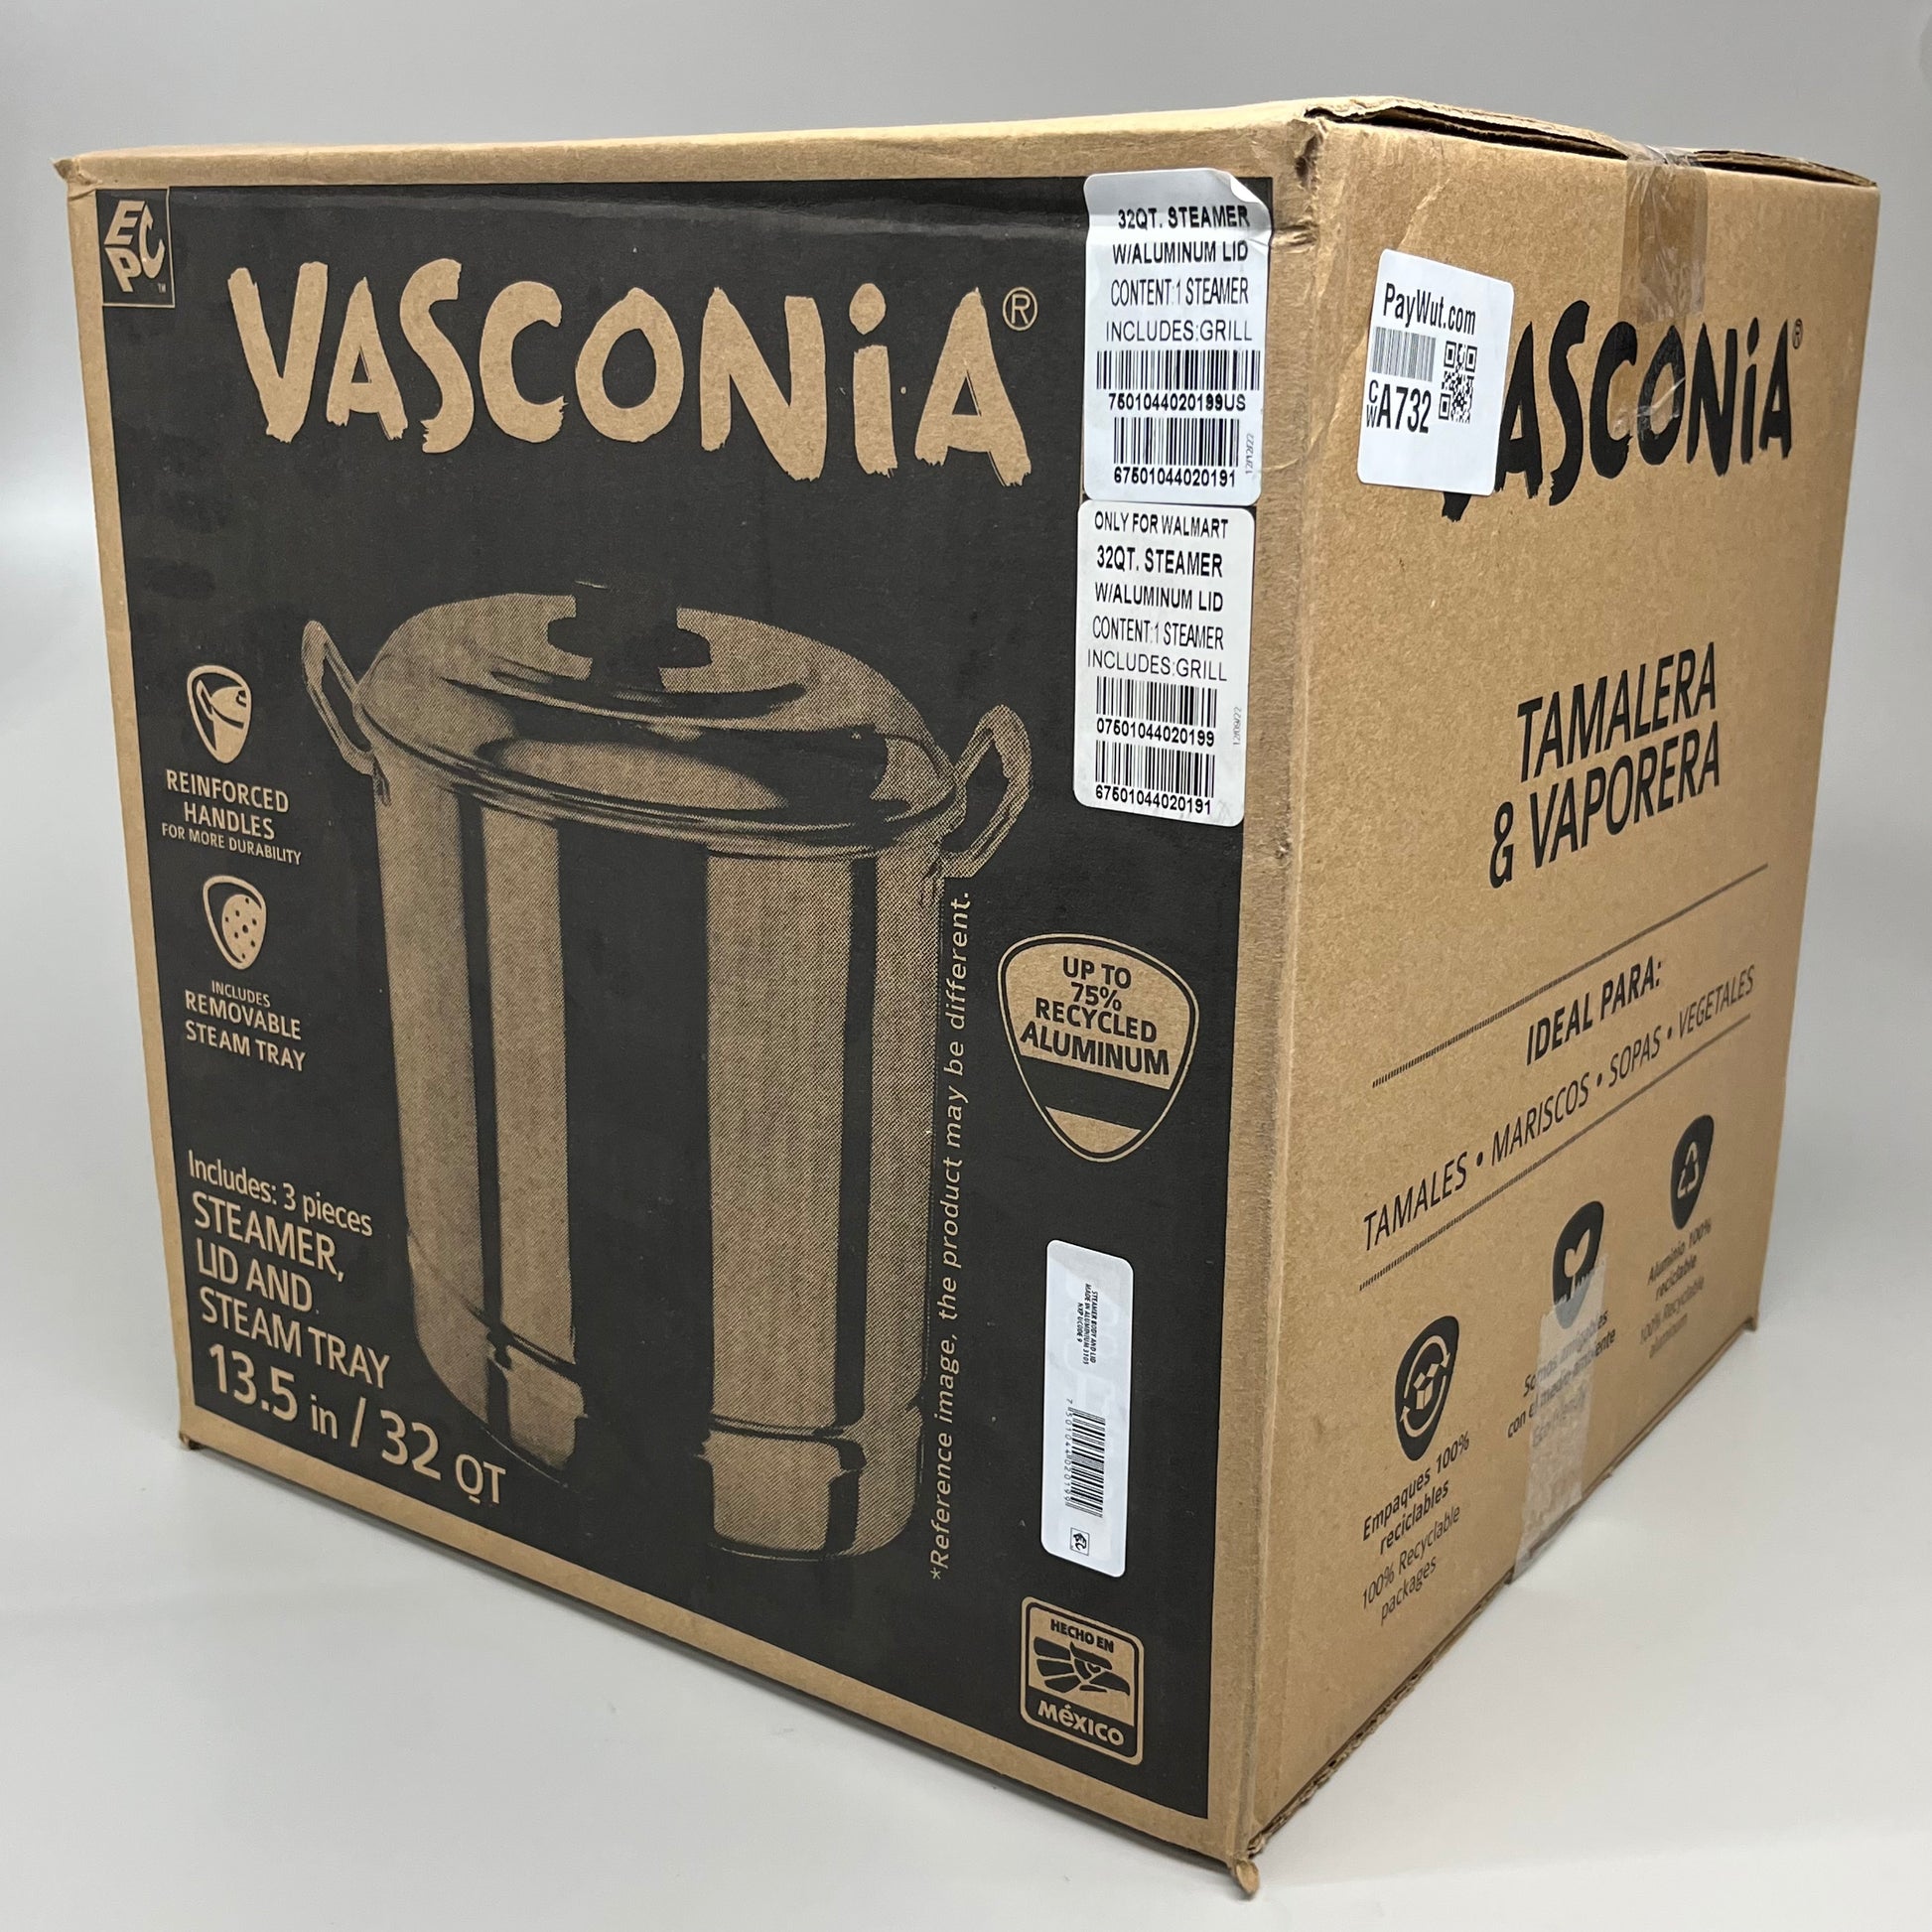 Vasconia 32 Quarts Aluminum Steamer Pot EKV4020199